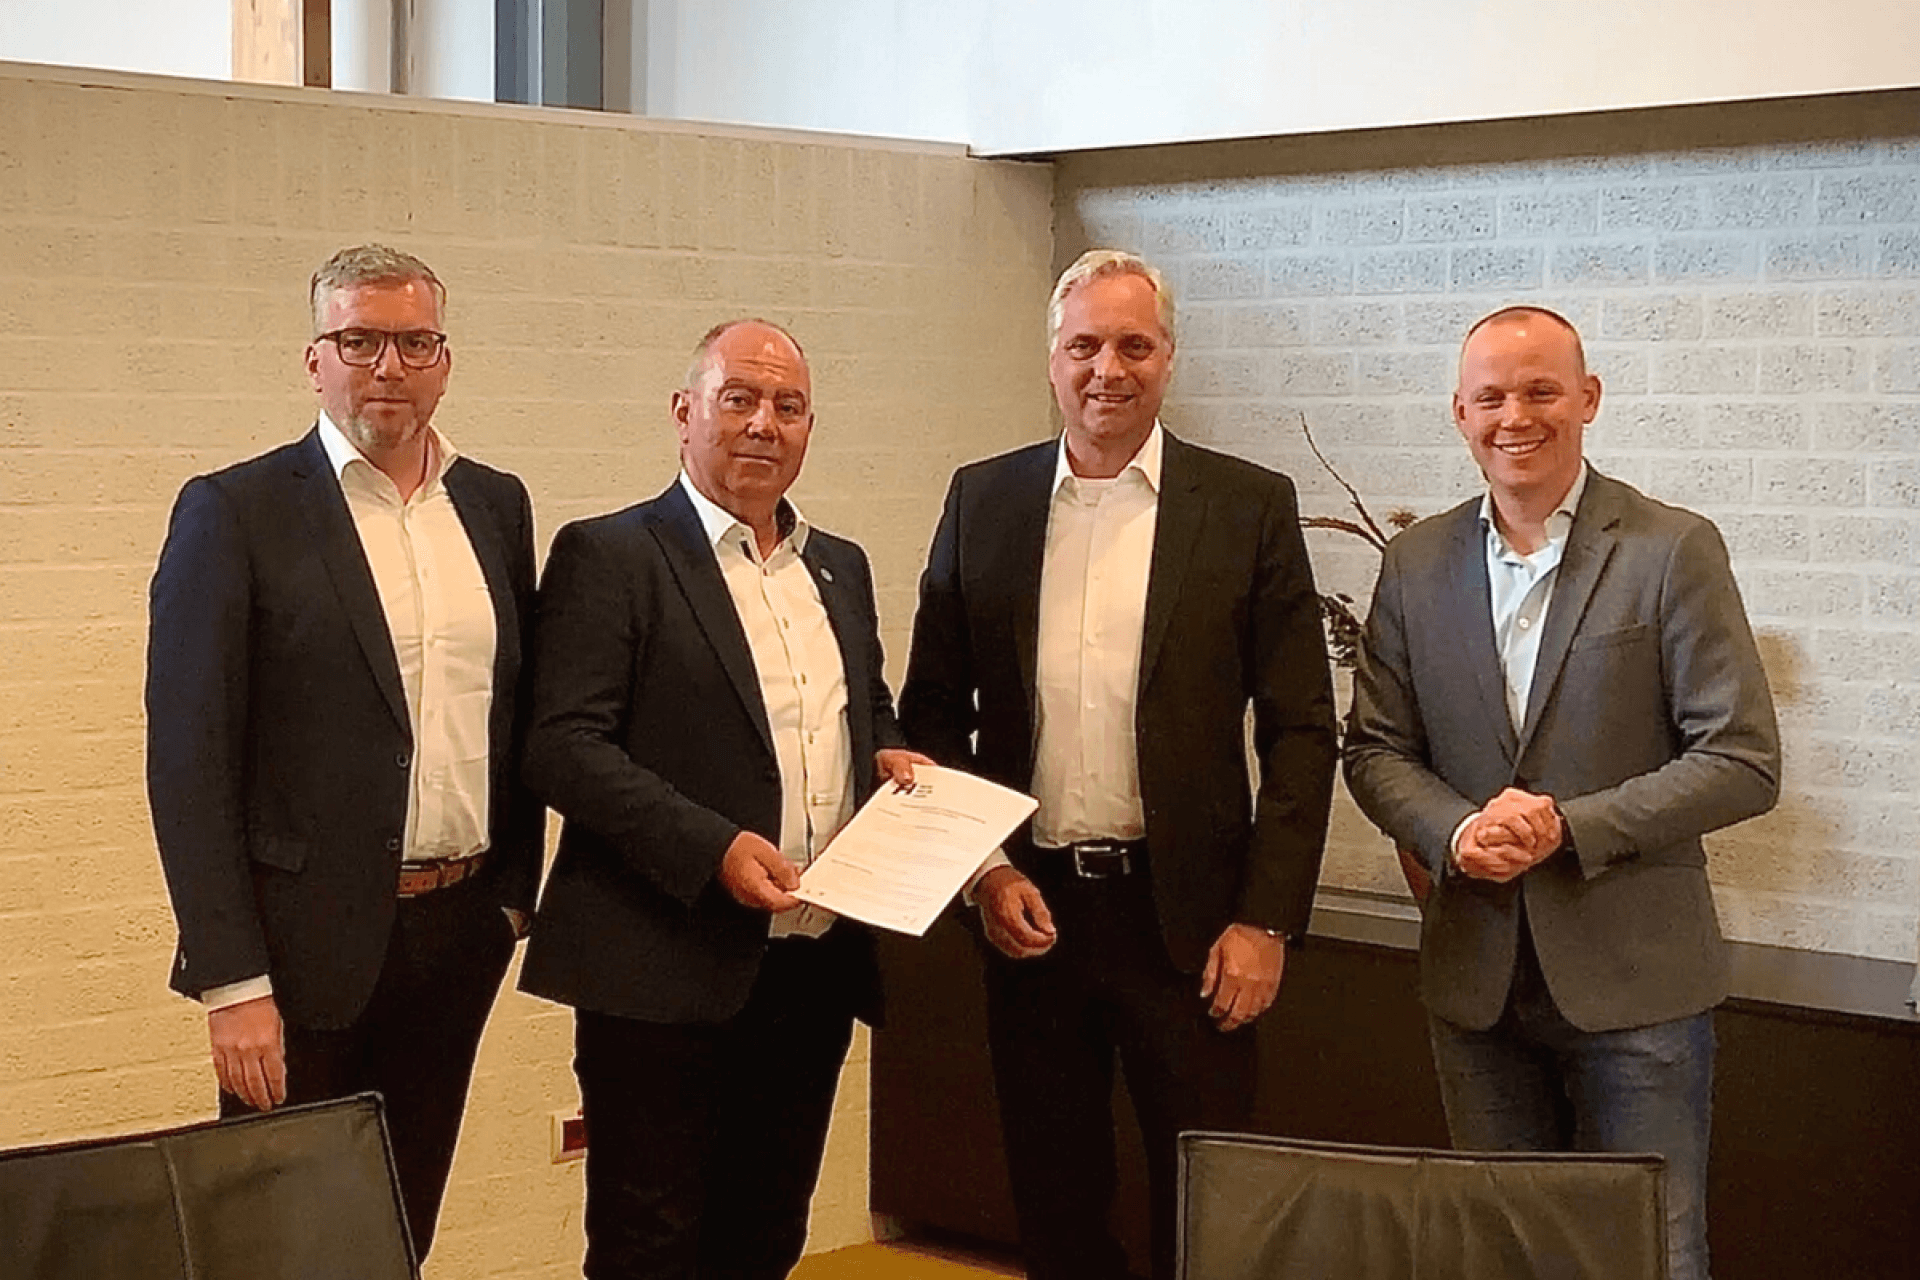 Ondertekening intentieovereenkomst woningbouwontwikkeling D'n Crouwel in Sevenum door André van den Brand, Eric Beurskens, Roy Bouten en Stefan Jansen